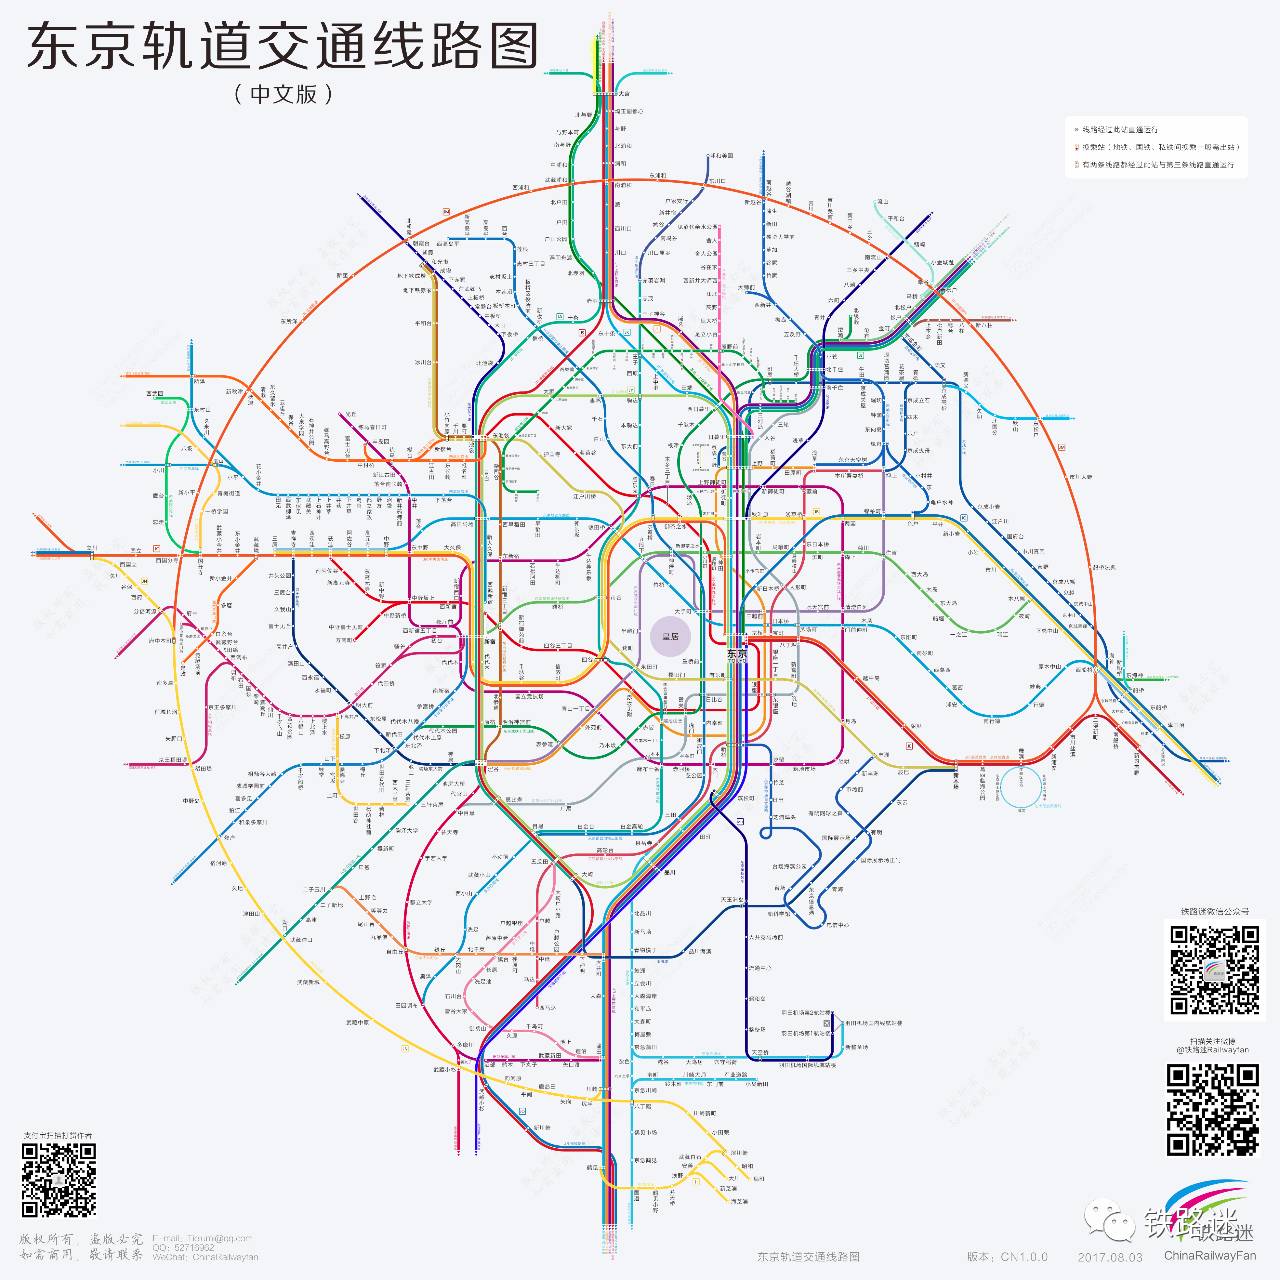 最新最全最清晰 密如蛛网的东京轨道交通线路图来了 好网角文章收藏